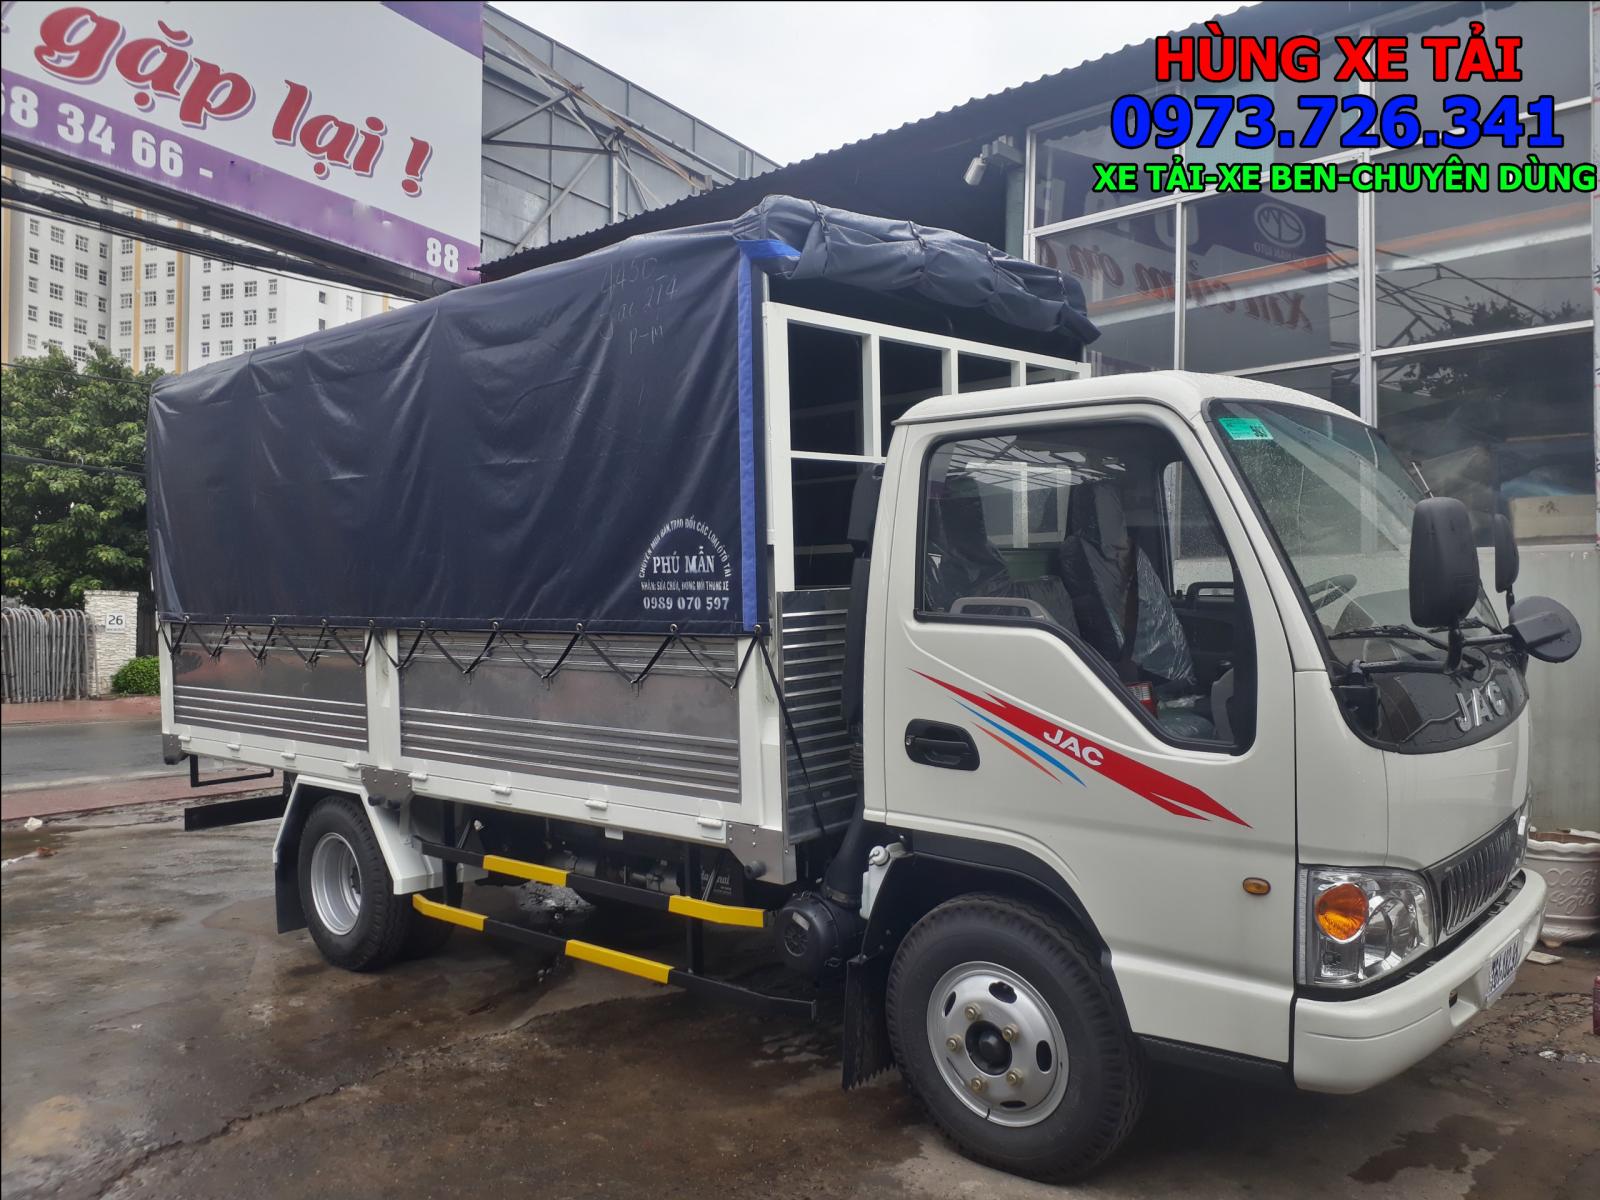 2019 - Bán xe tải JAC 2T4 thùng dài 4m4 động cơ Isuzu trả trước 60 triệu